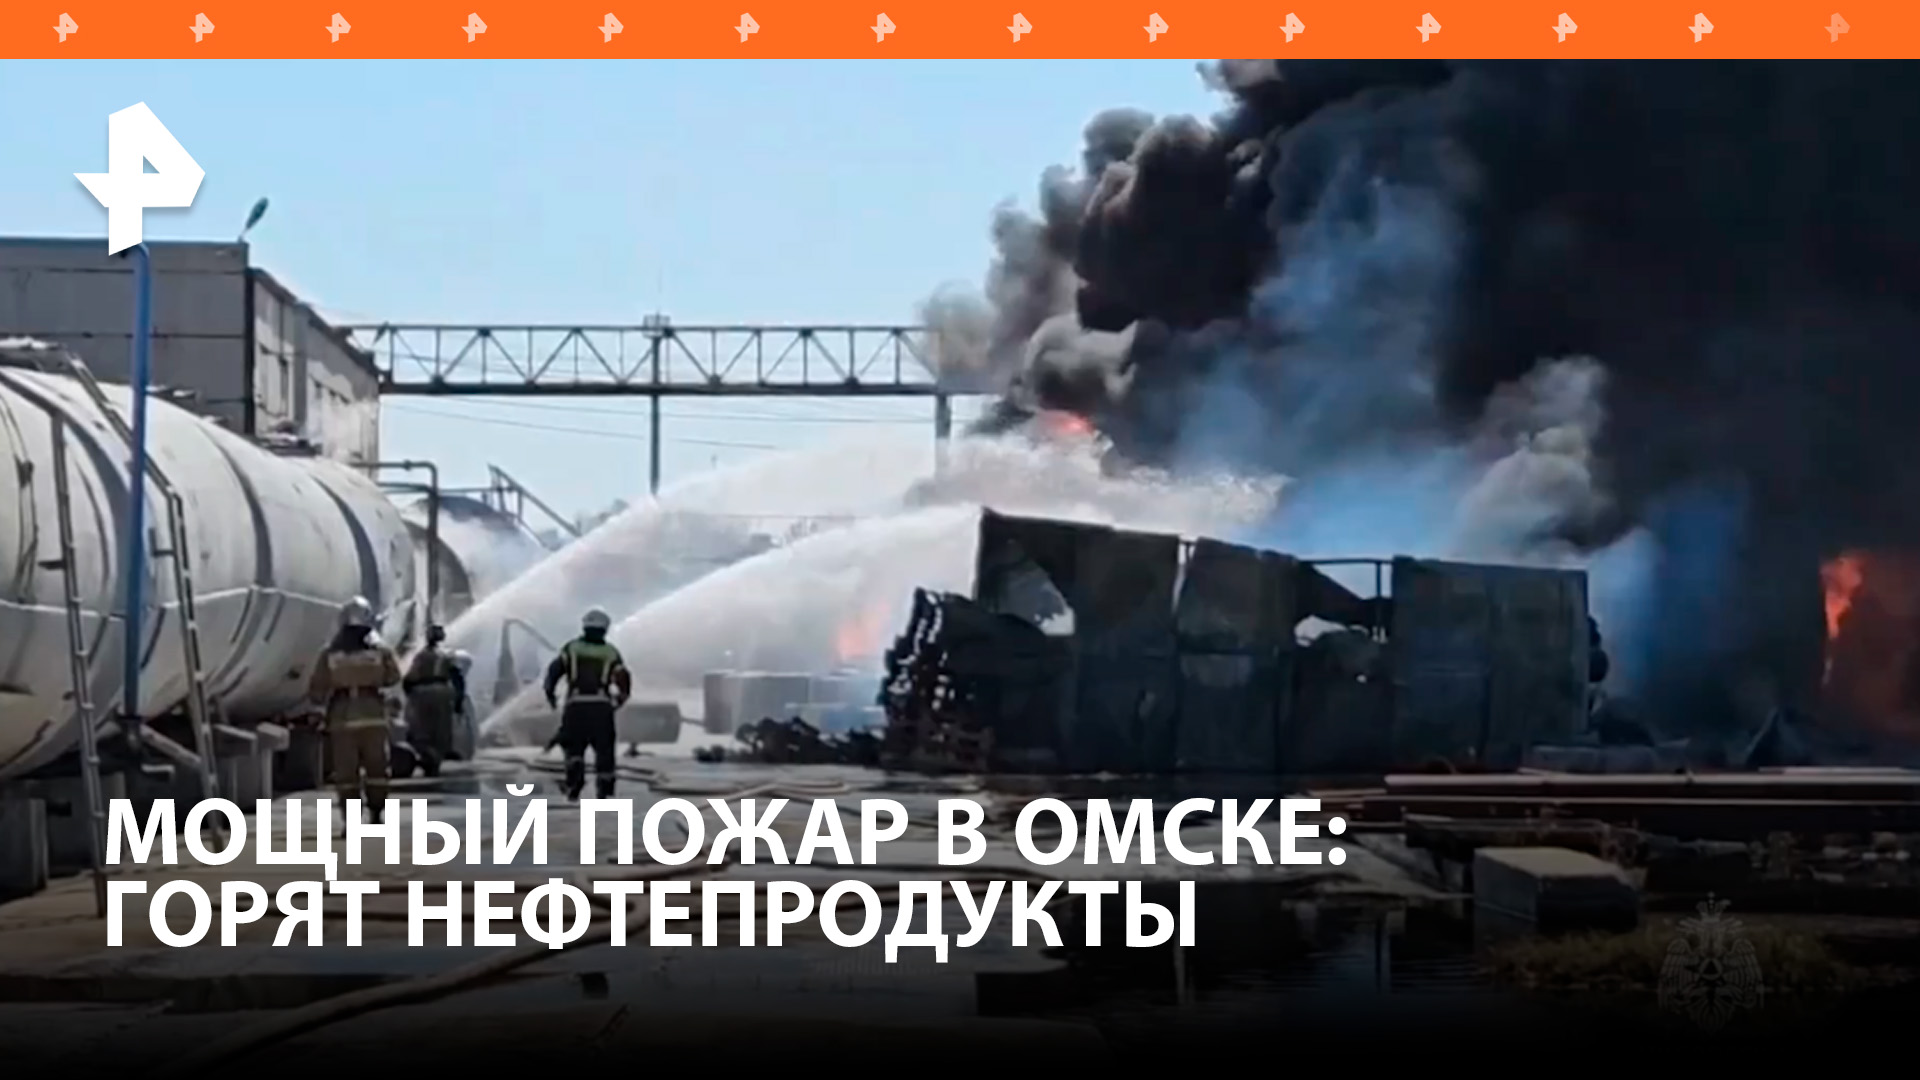 Емкости с нефтепродуктами загорелись в Омске: пожар локализован / РЕН Новости